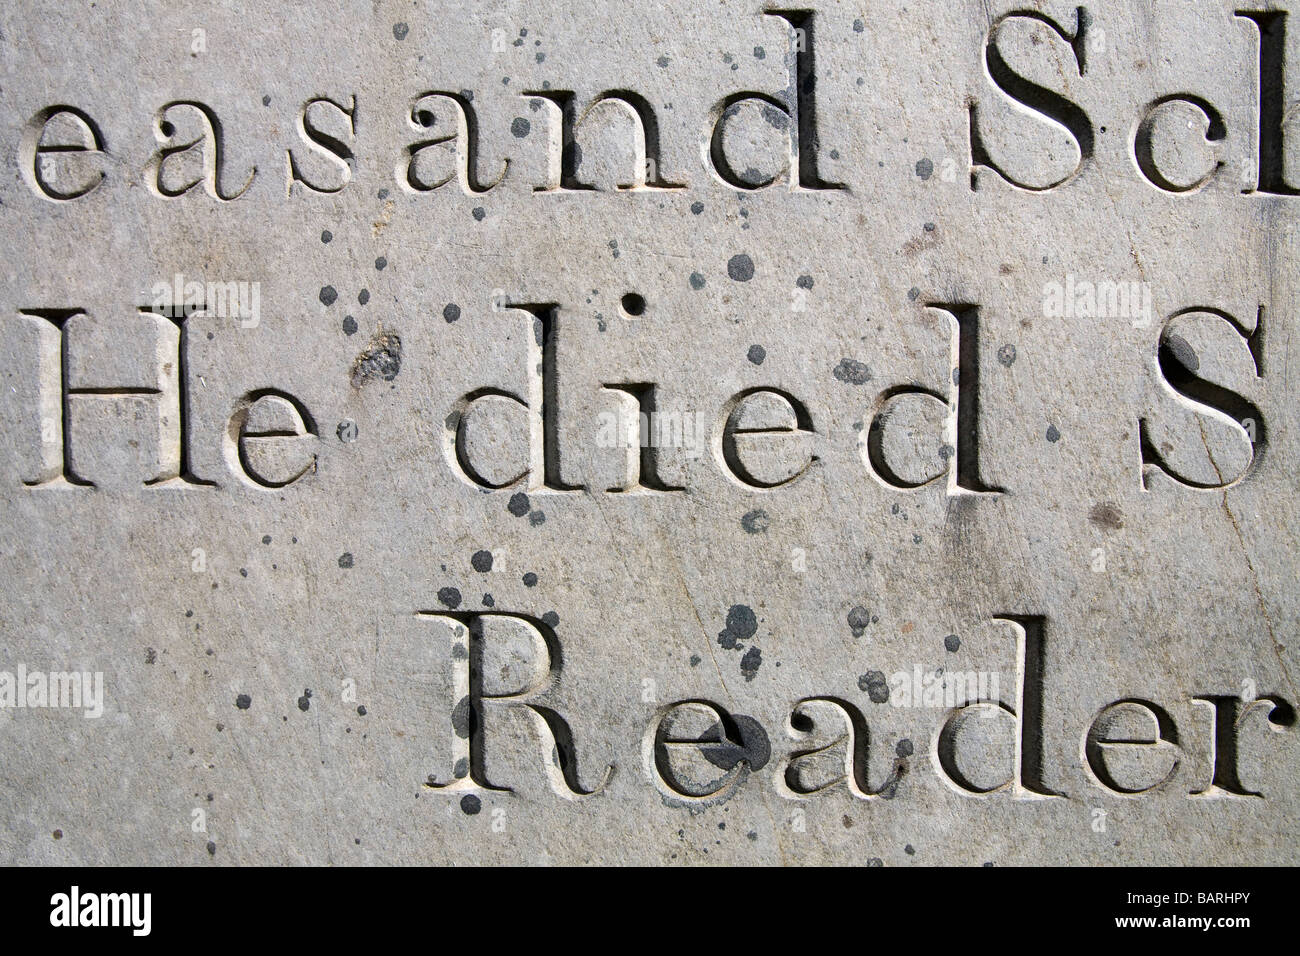 De près de l'expression "Il est mort" et d'autres fragments de texte gravé sur une pierre tombale Banque D'Images